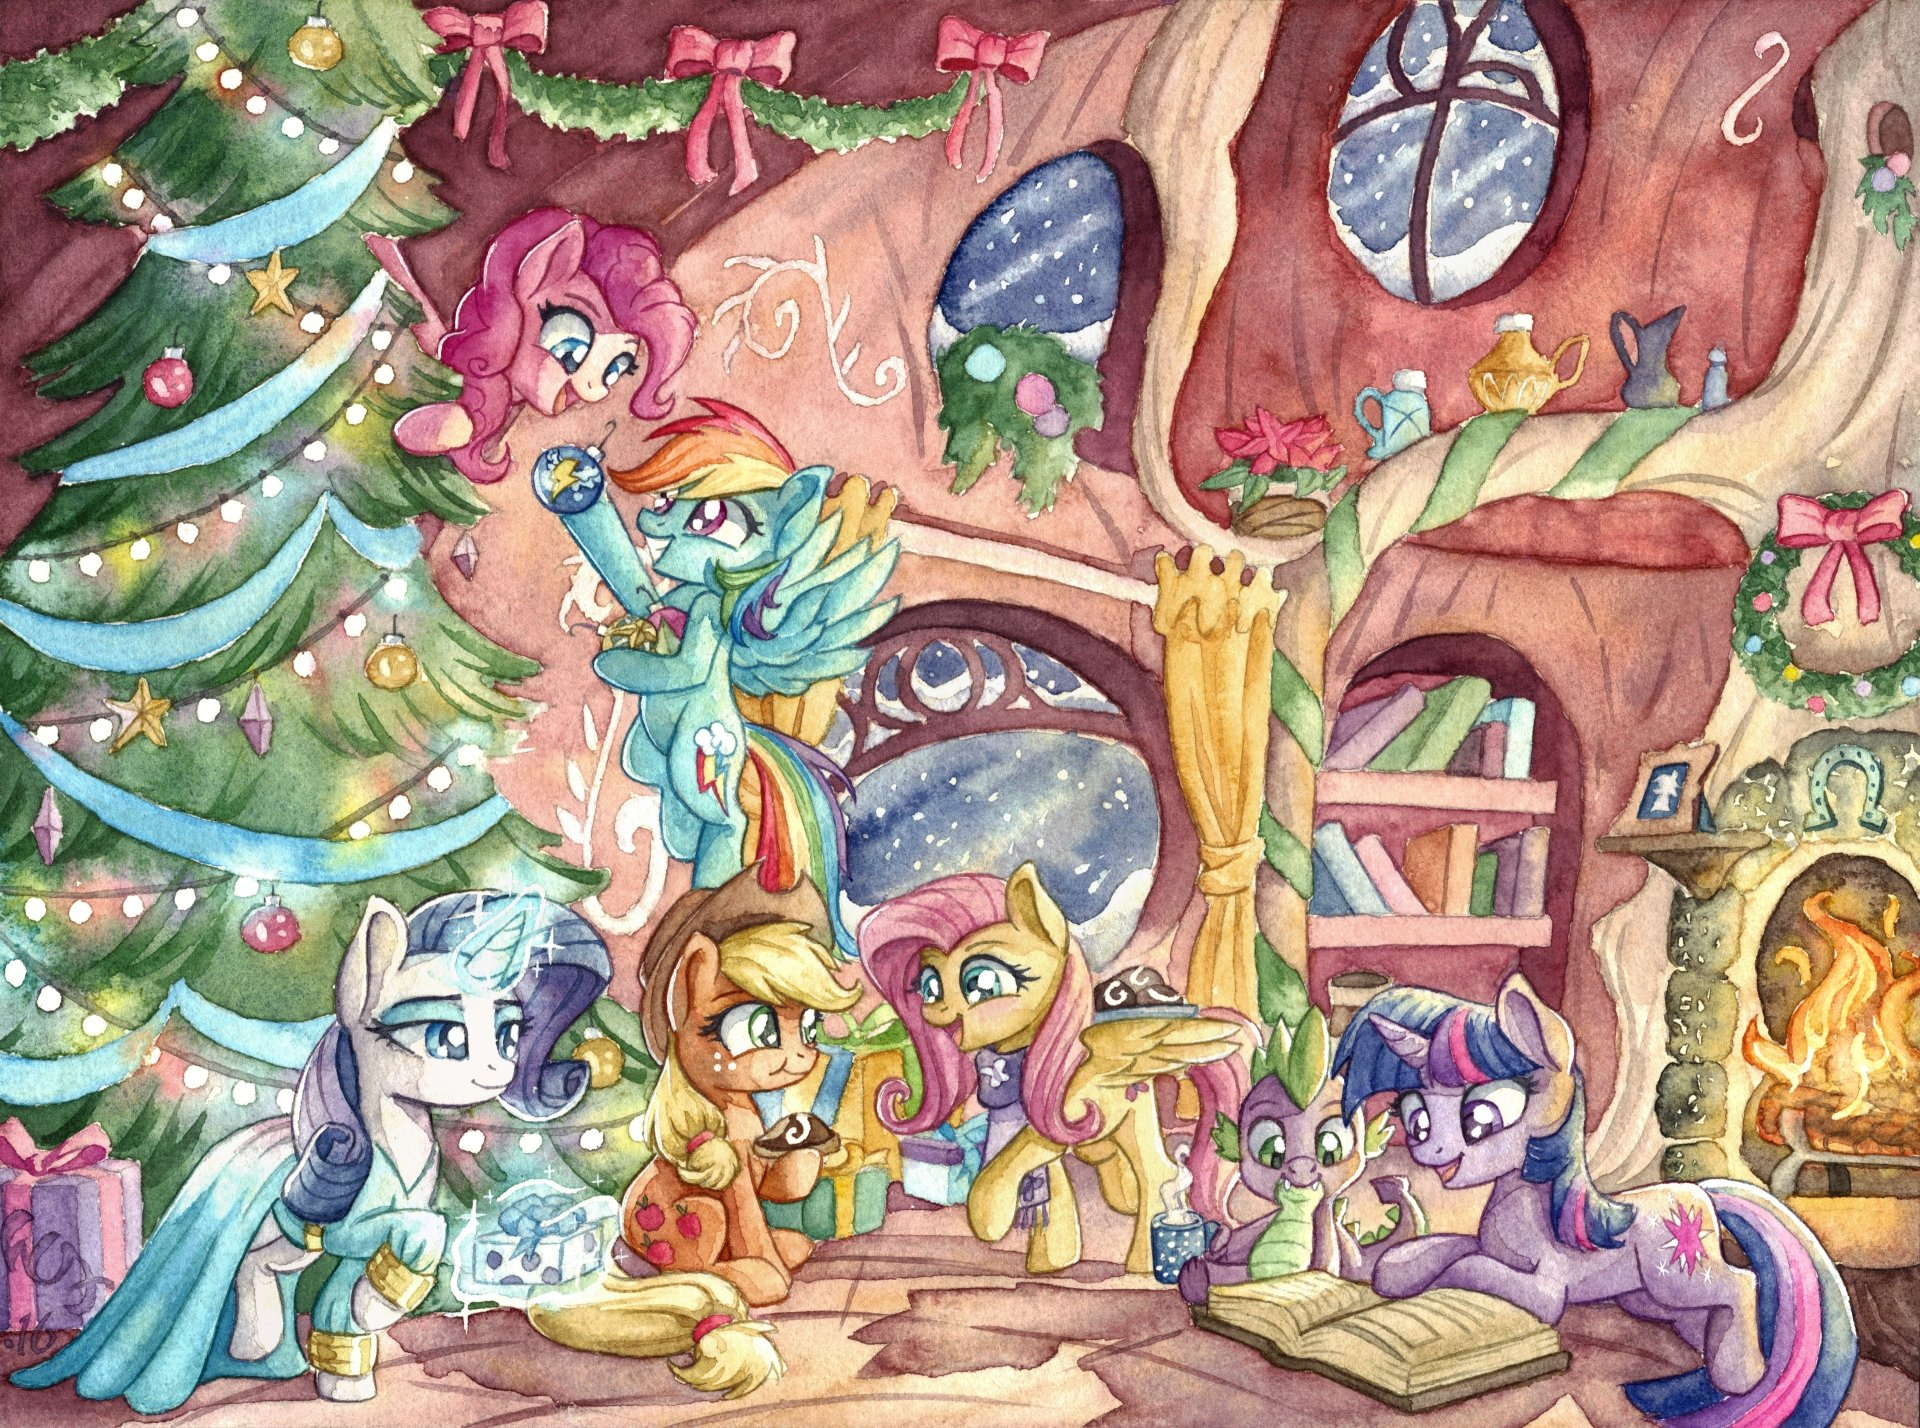 1920x1428 My Little Pony: Friendship is Magic 4k Ultra HD Wallpaper by thewizard-of-art